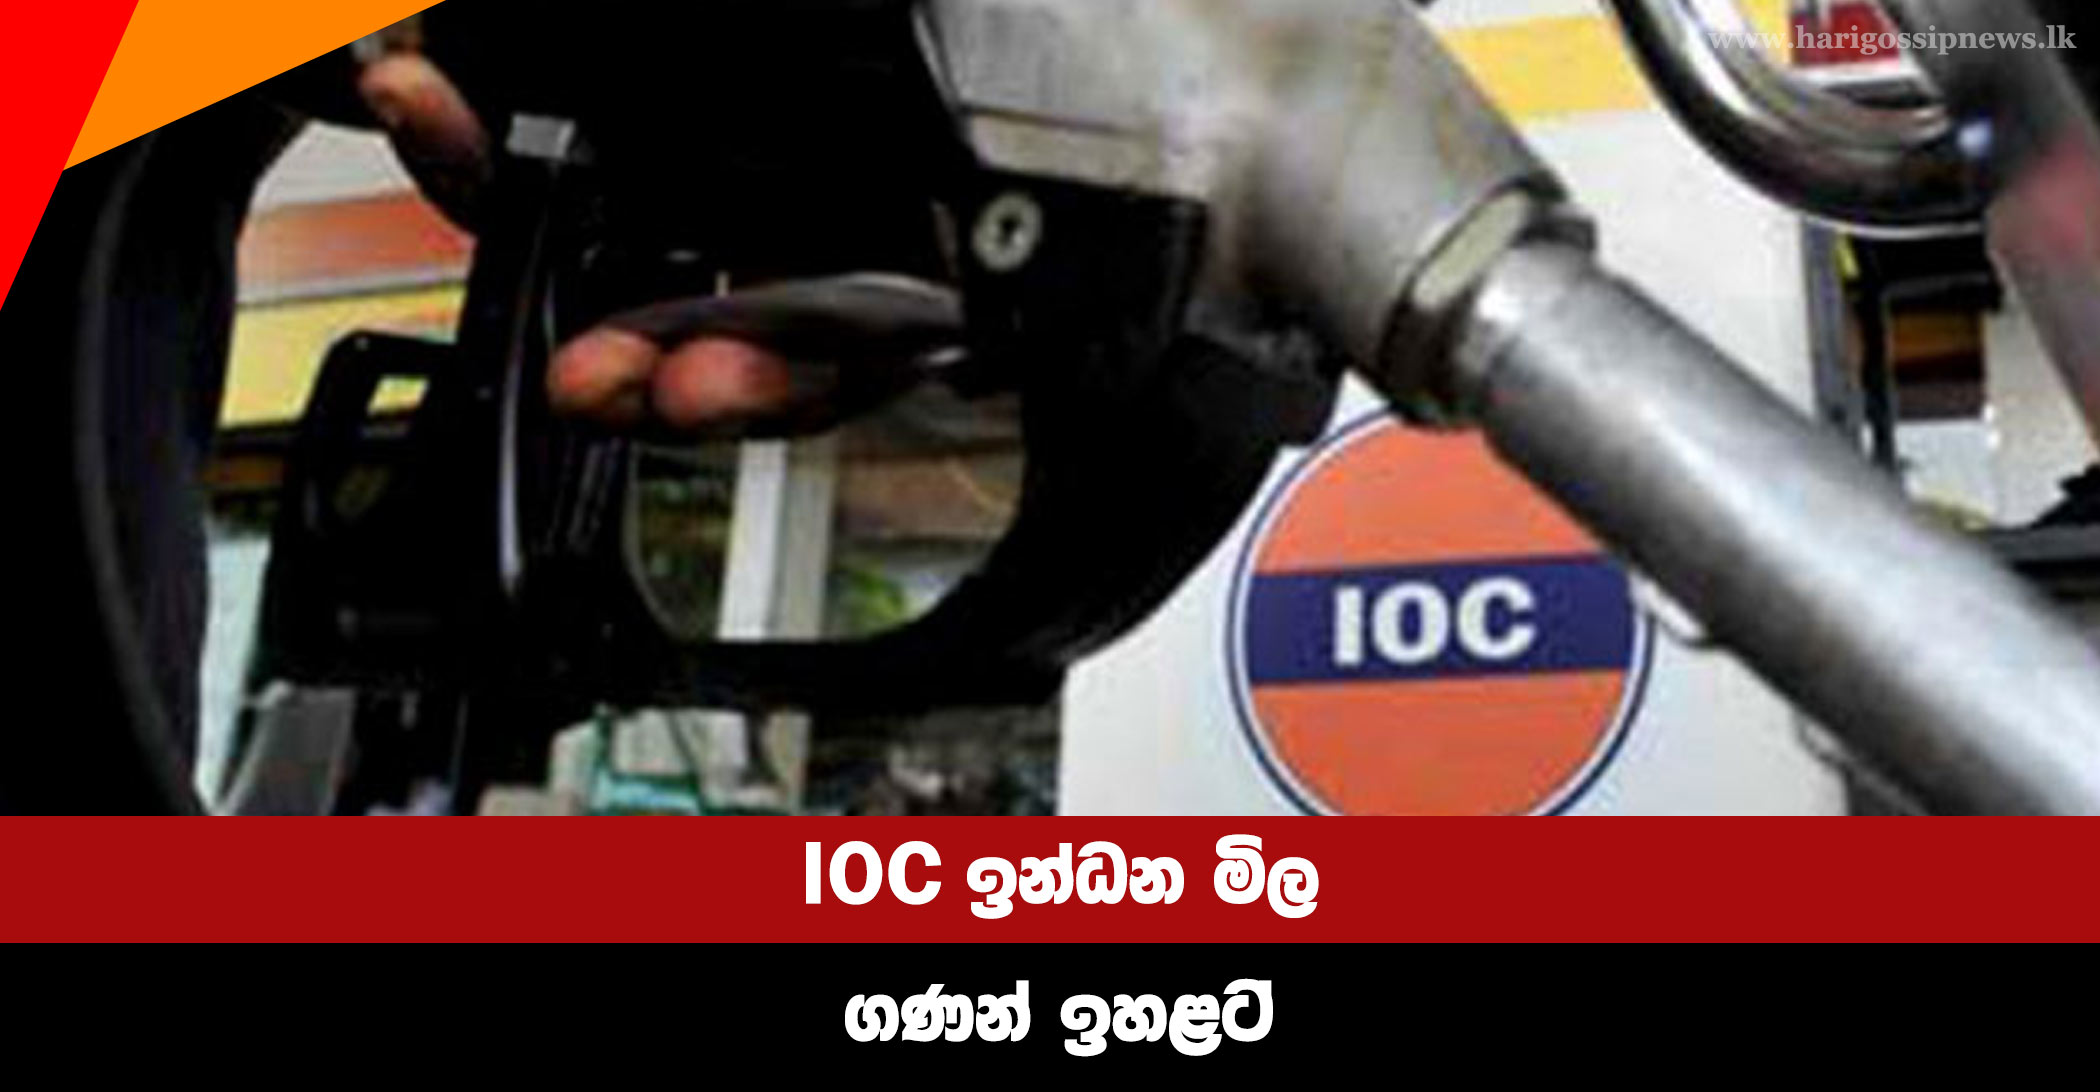 IOC raises fuel prices